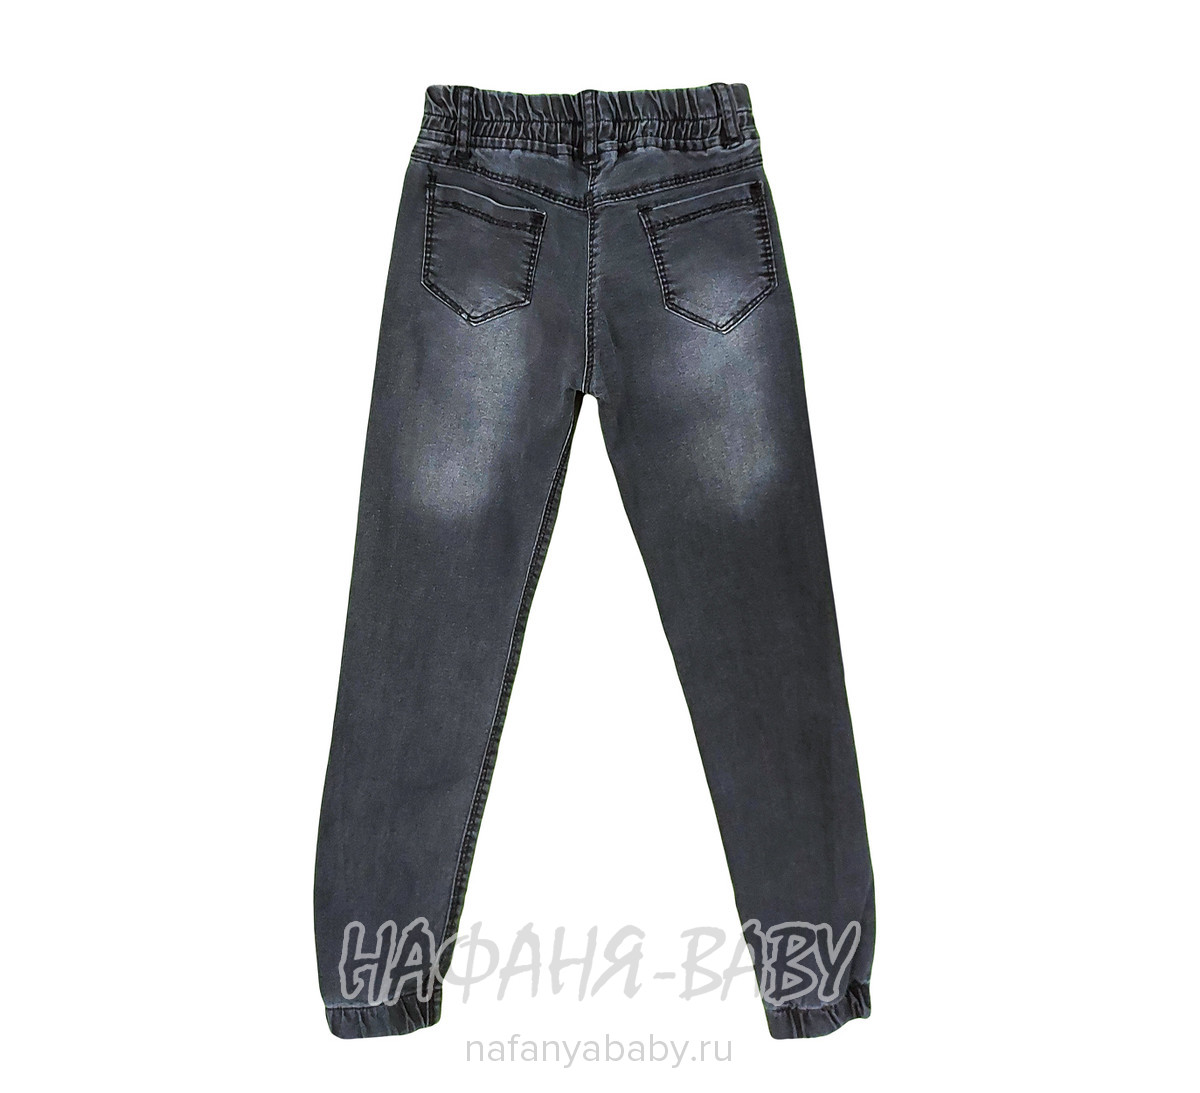 Подростковые джинсы YAVRUCAK, купить в интернет магазине Нафаня. арт: 8129.